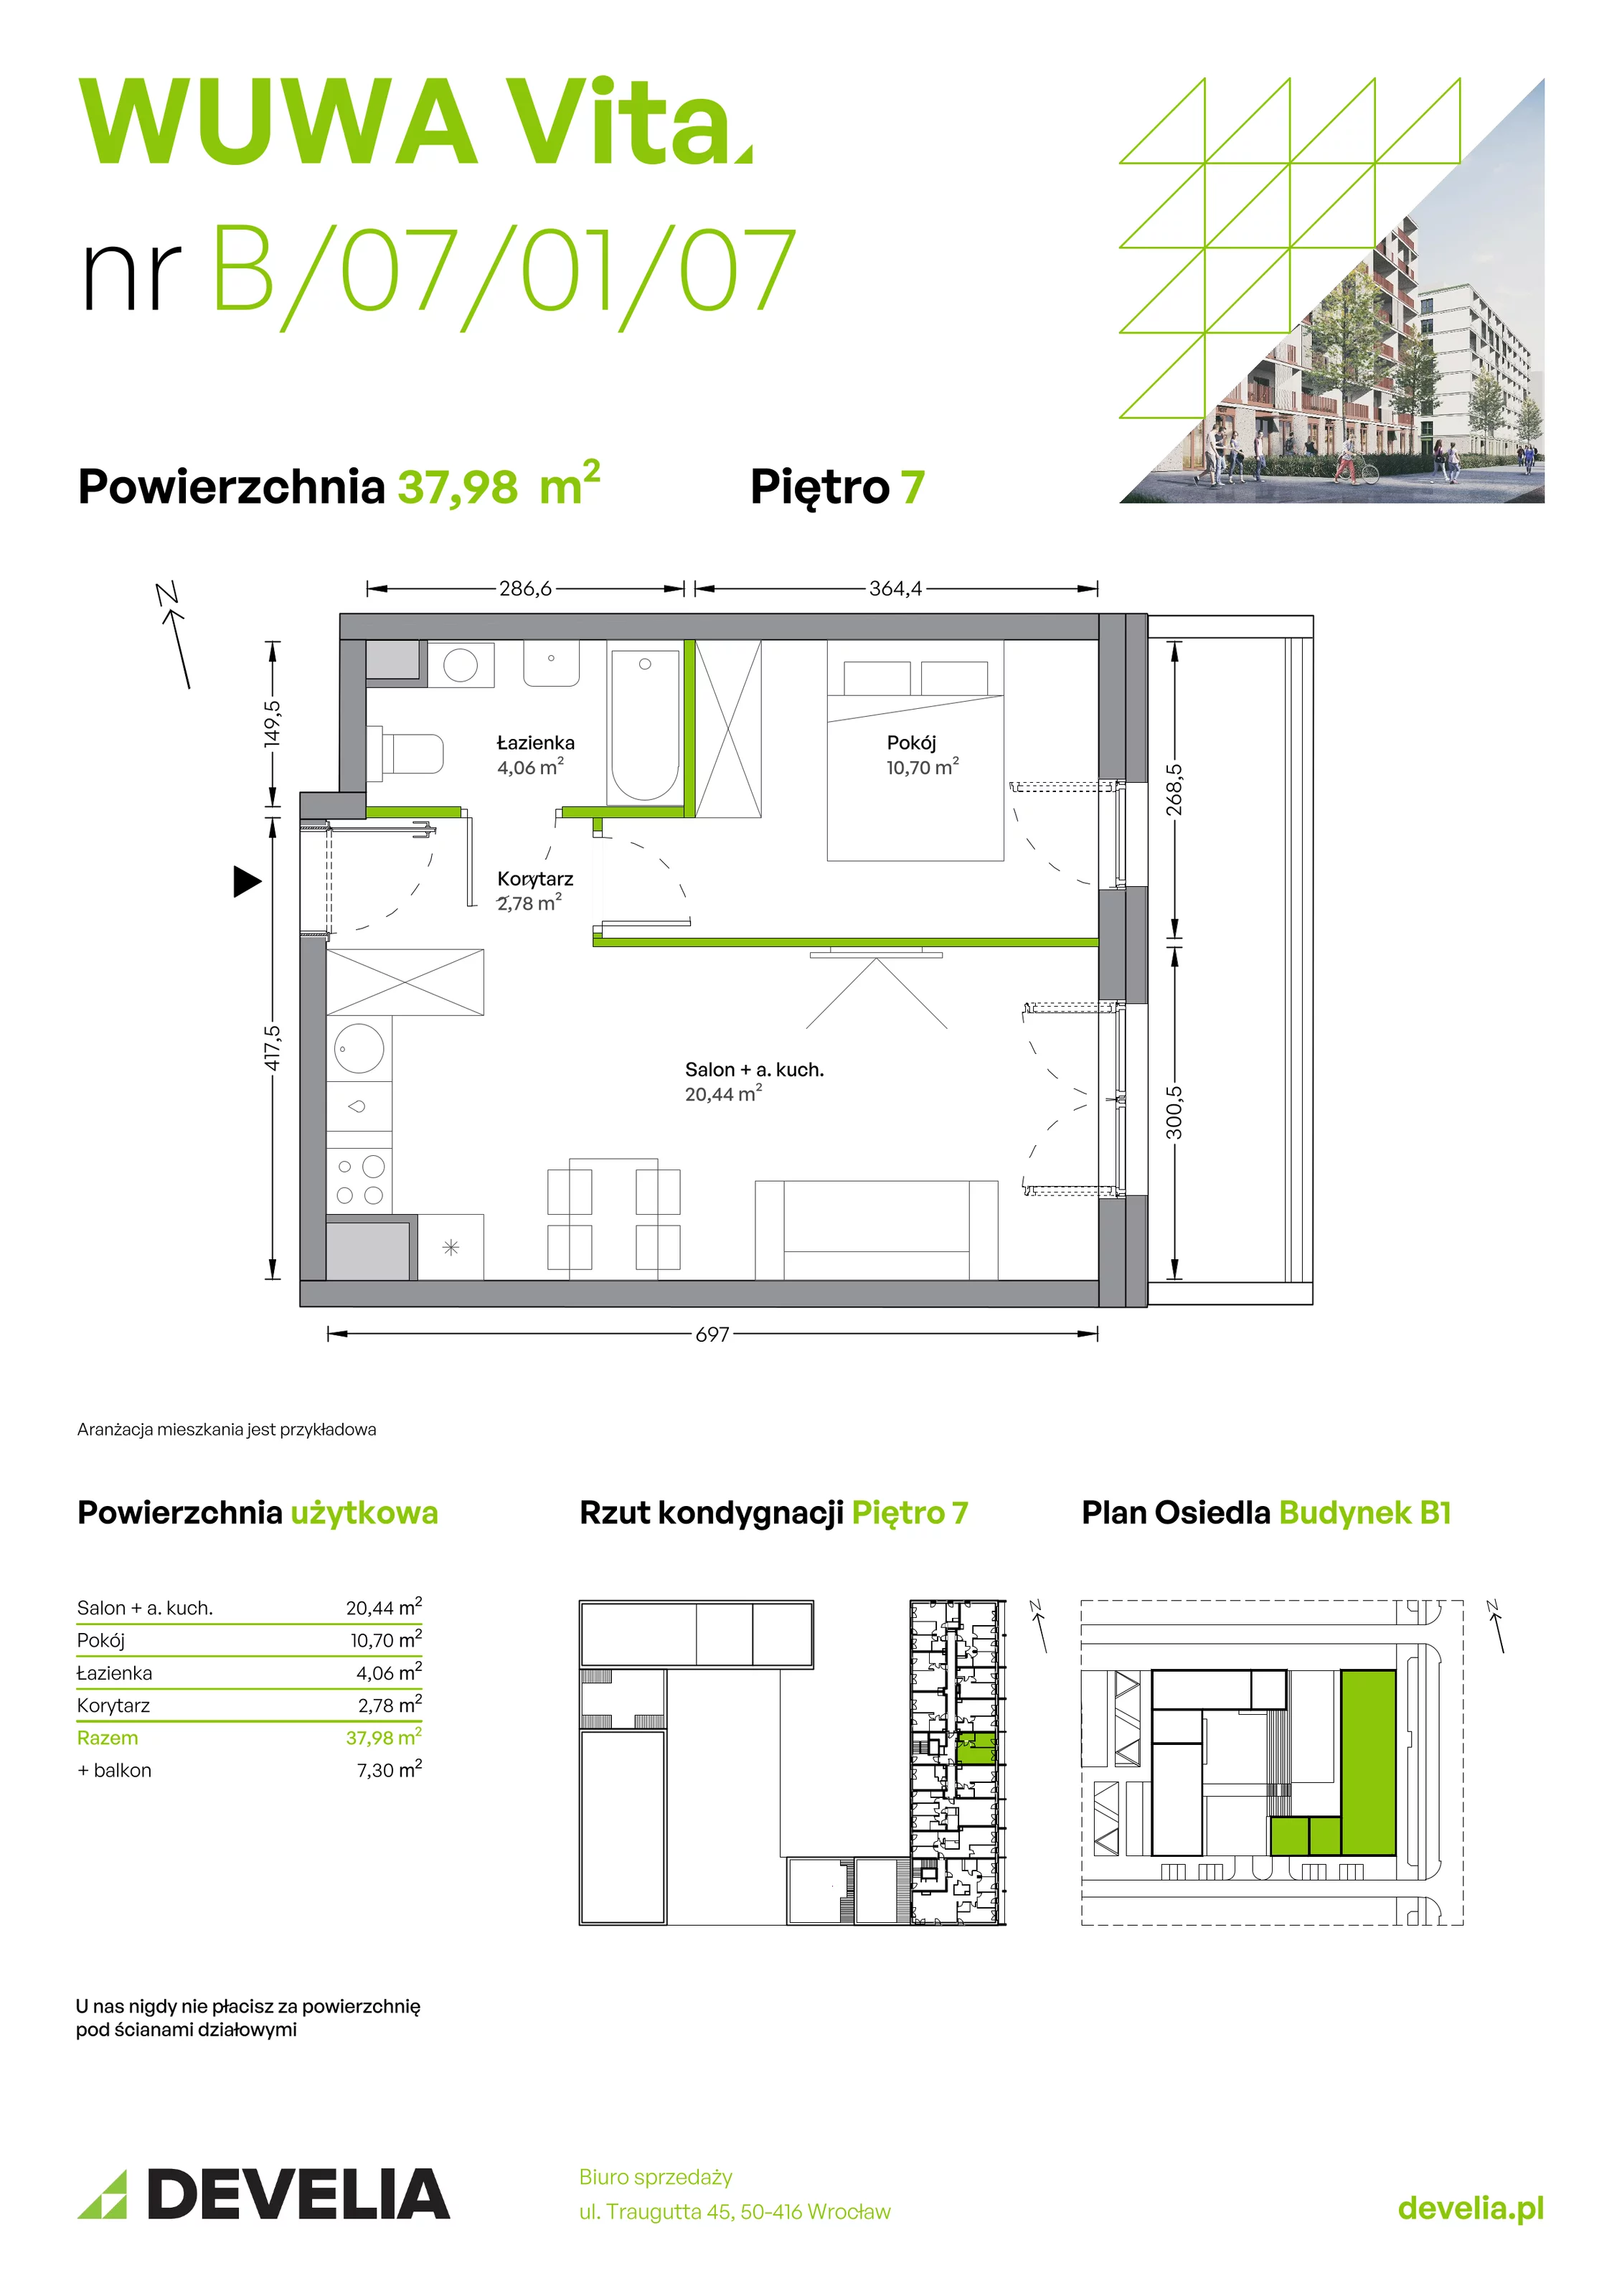 Mieszkanie 37,98 m², piętro 7, oferta nr B.07.01.07, WUWA Vita, Wrocław, Żerniki, Fabryczna, ul. Tadeusza Brzozy